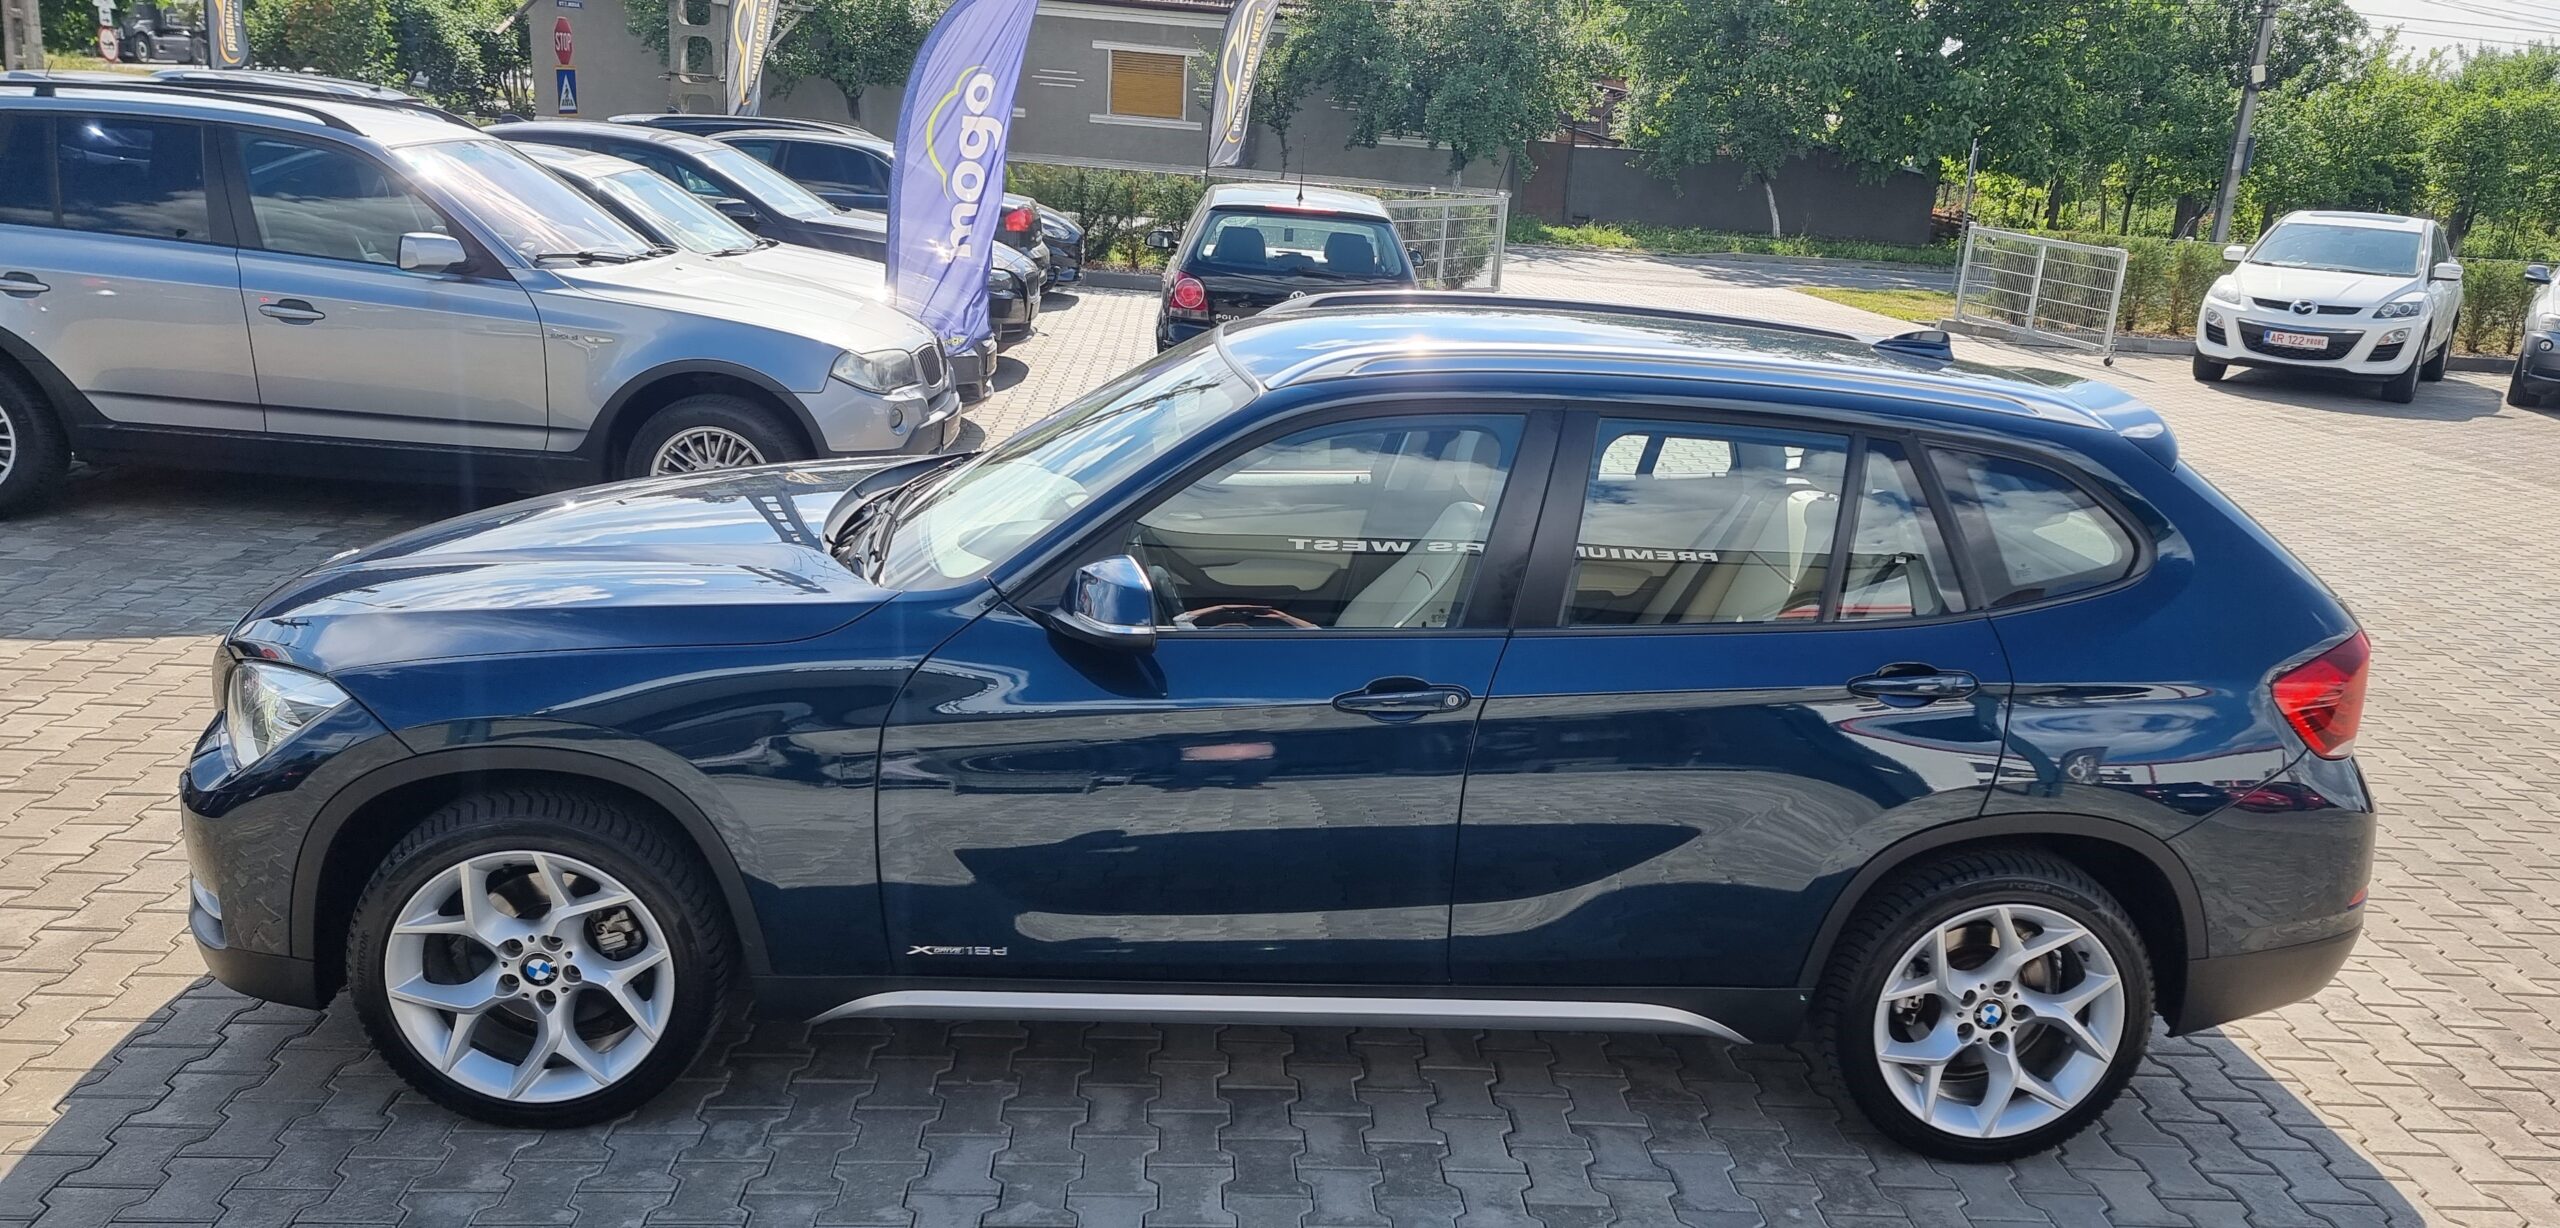 BMW X1 X-DRIVE, 2.0 DIESEL, 143 CP,AUTOMAT EURO 5, AN 2012  FACELIFT